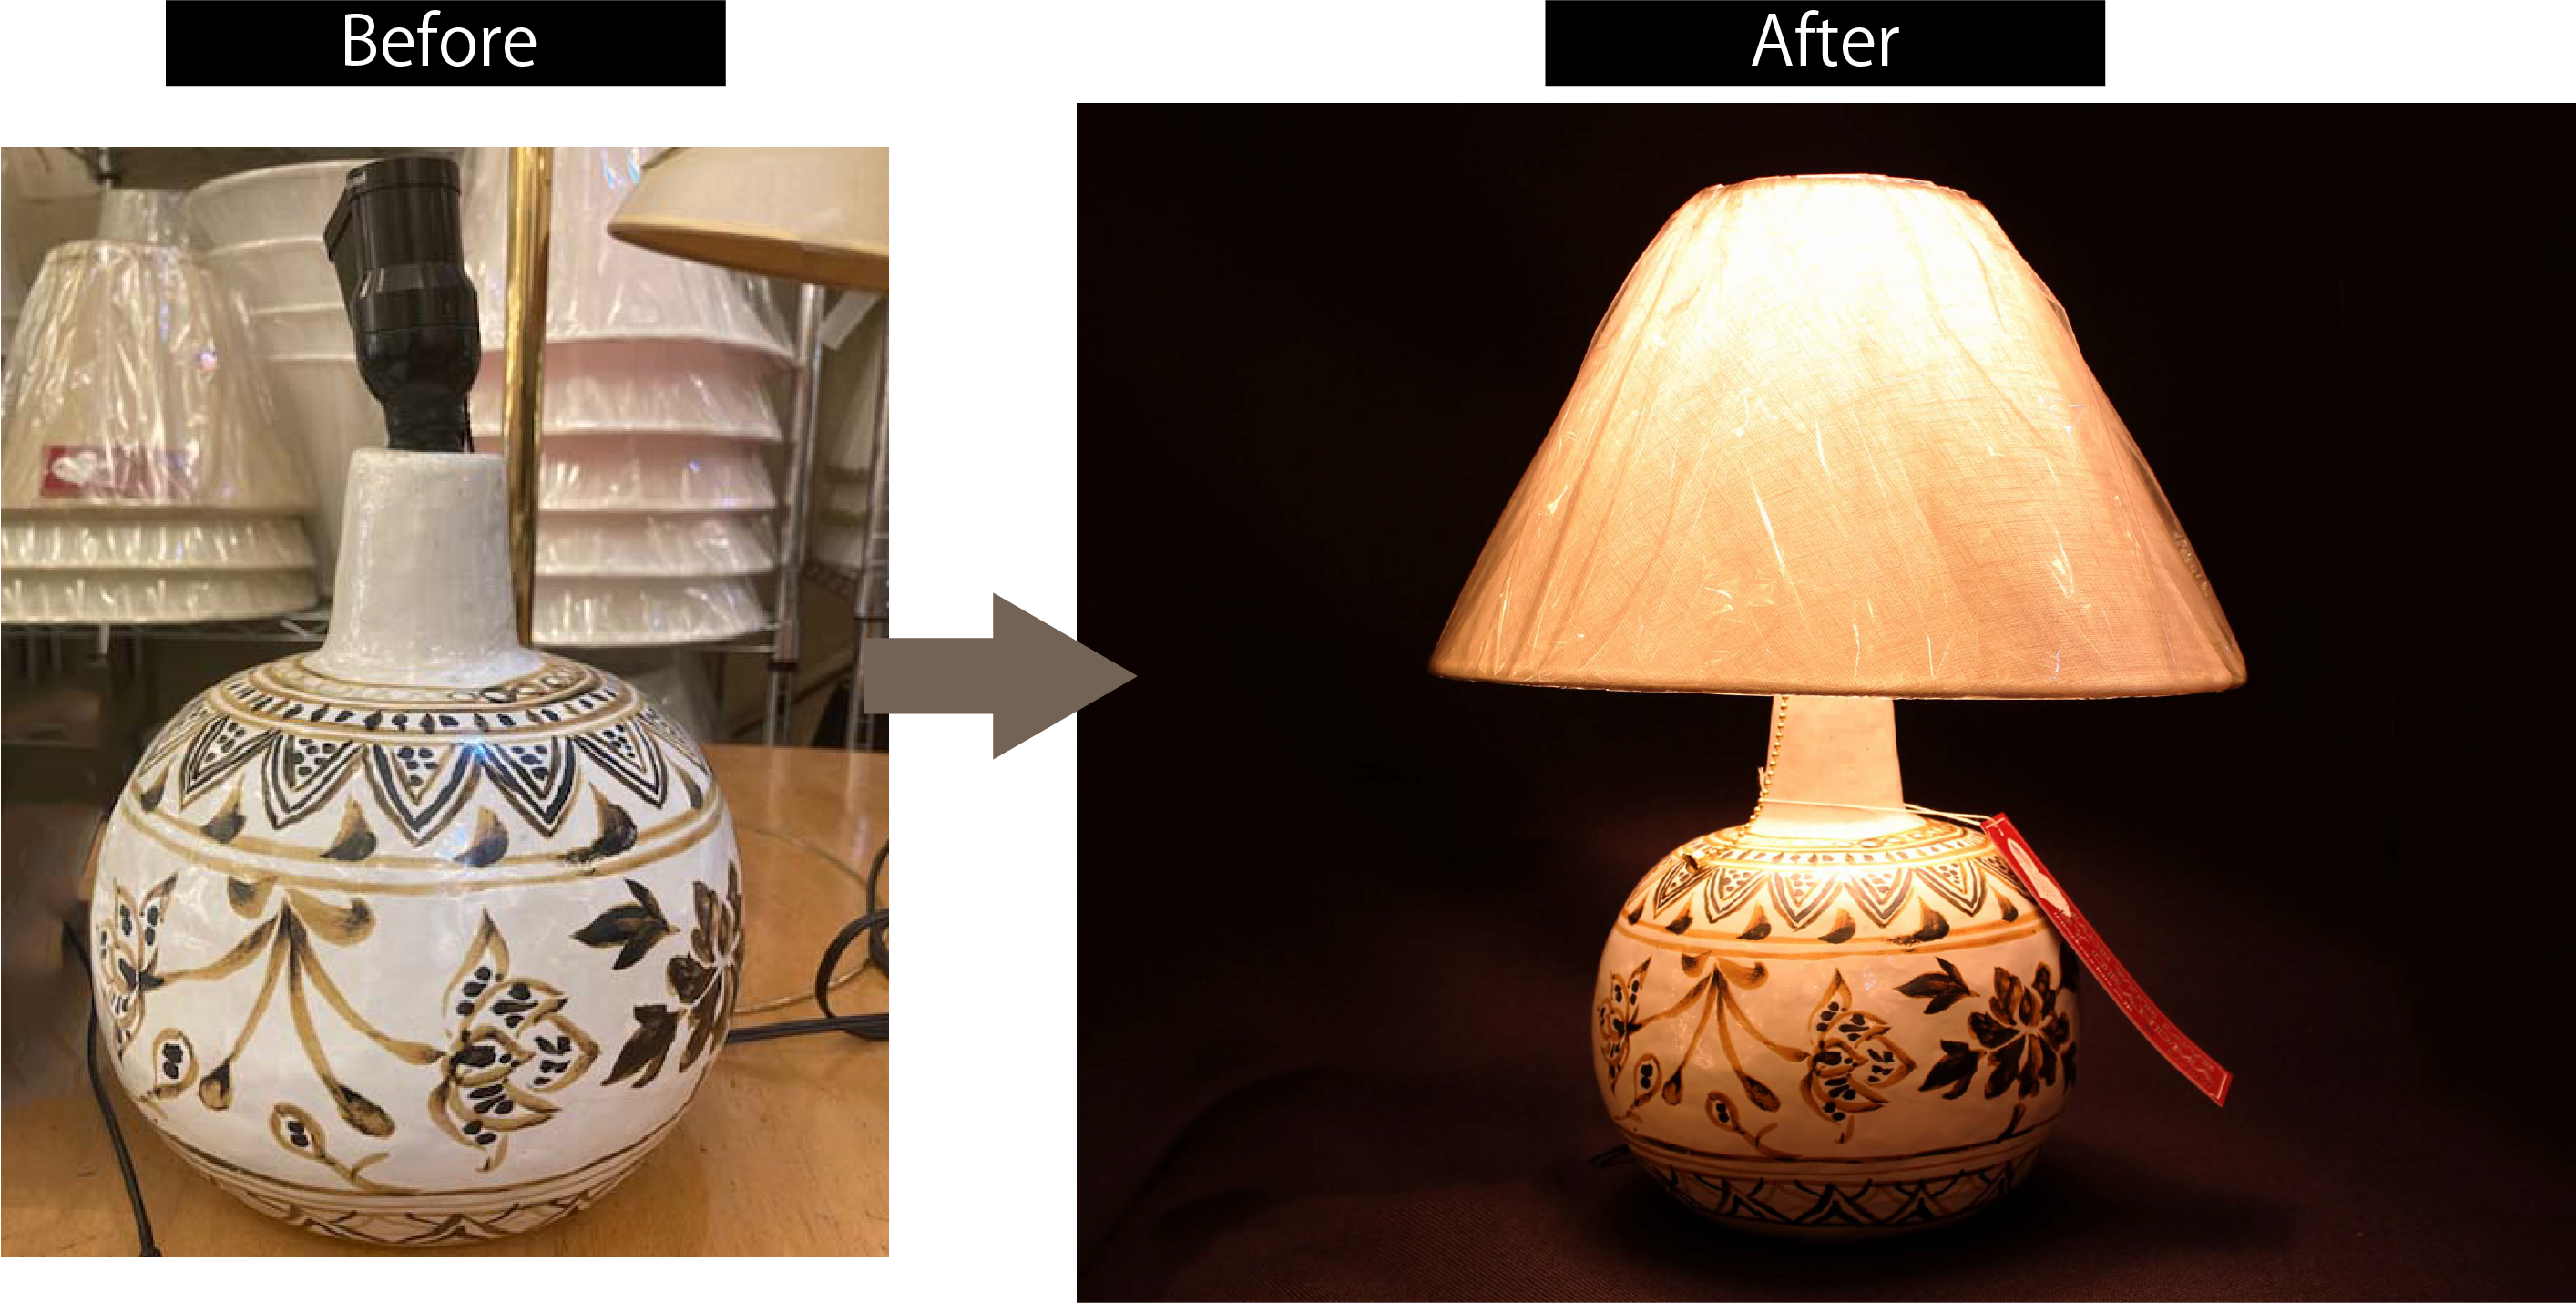 手創りの陶器を使ったランプ。修理後、オリジナルシェードをコーディネートいたしました。